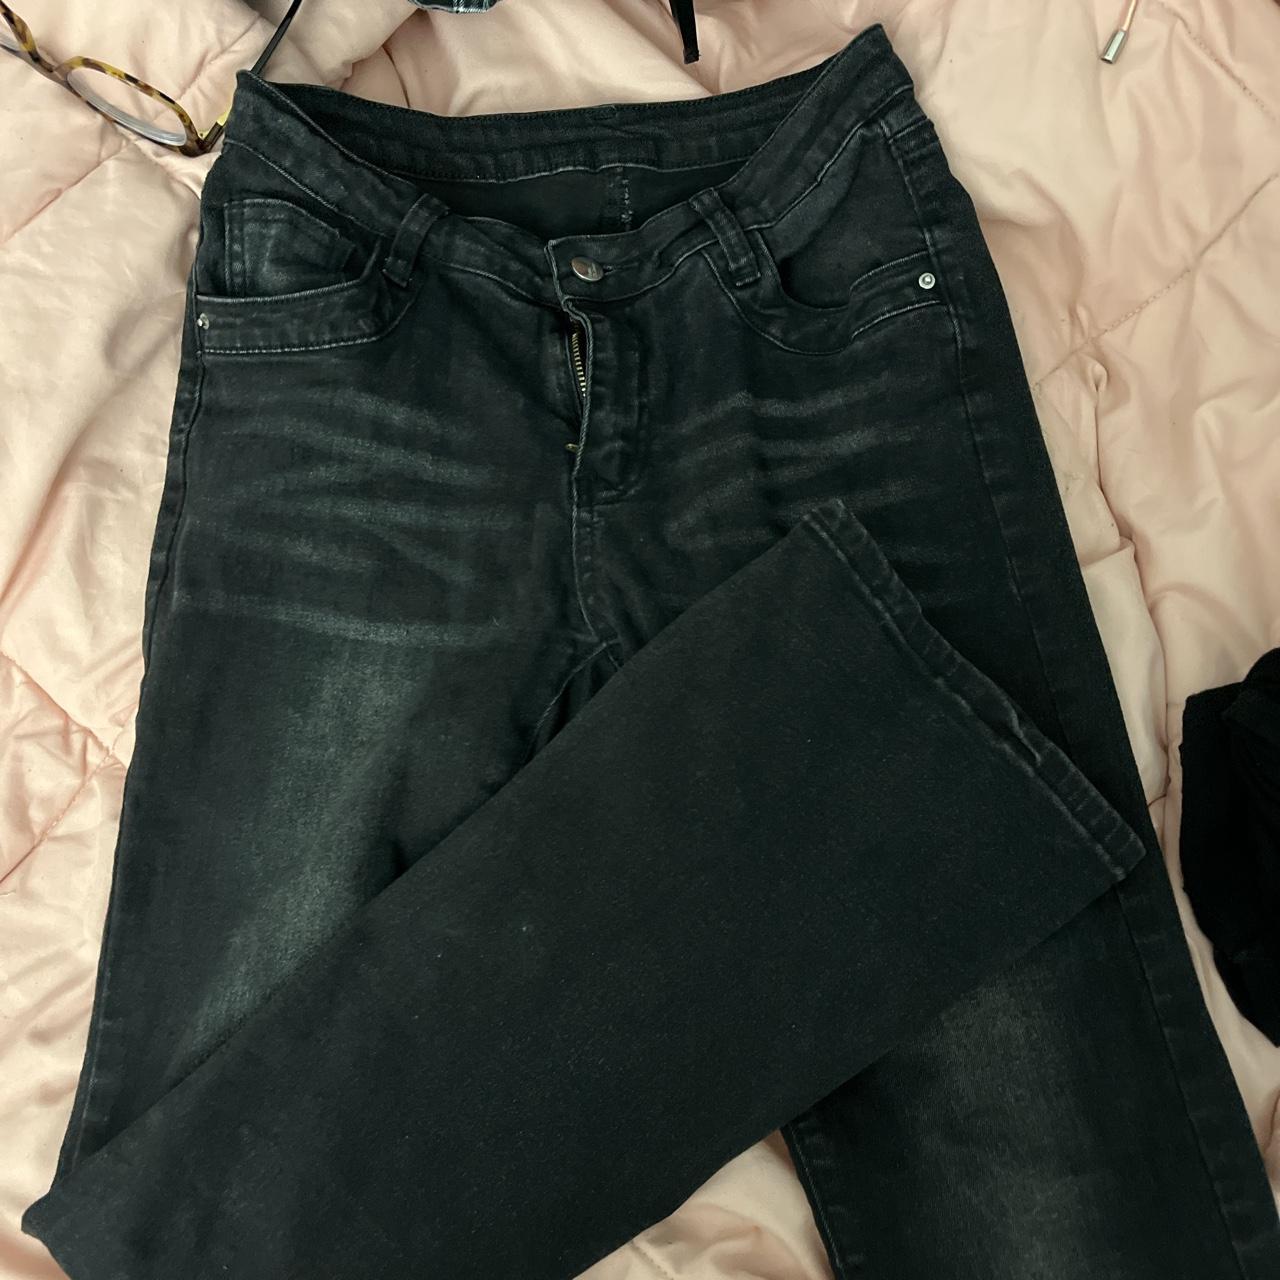 Shein low rise jeans Worn a few times (still like... - Depop